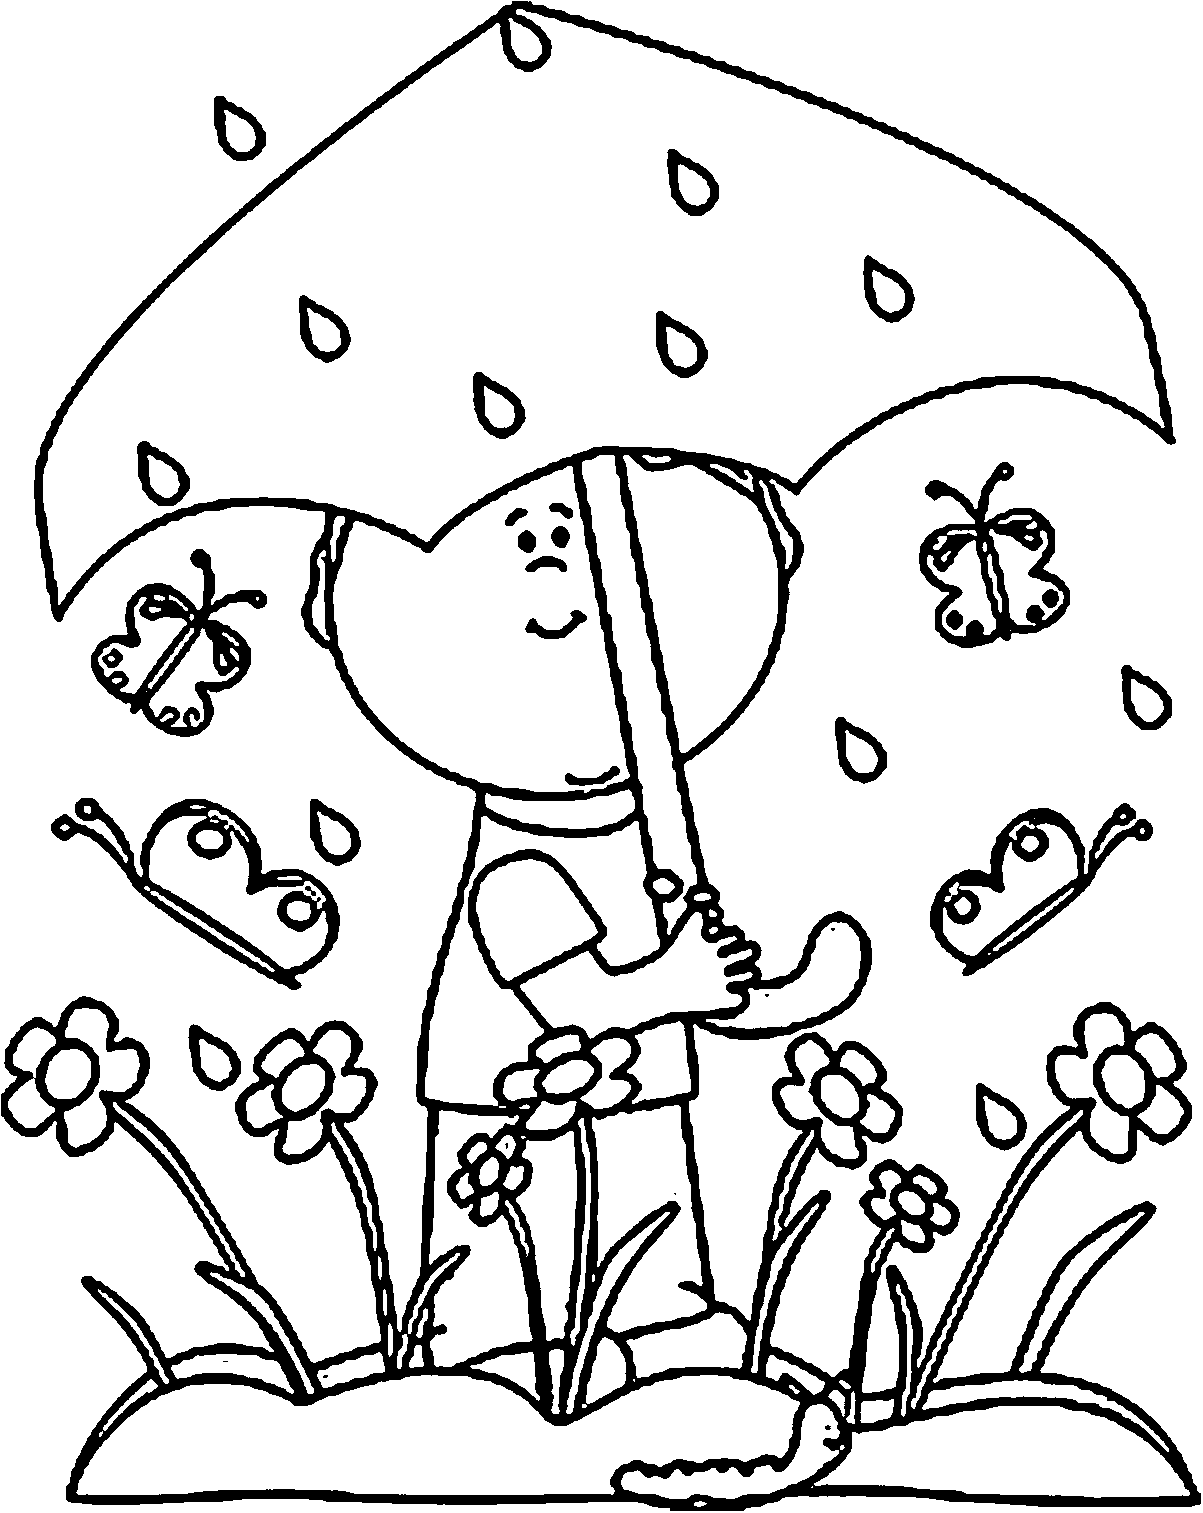 rain coloring page rain coloring pages coloring pages to download and print rain coloring page 